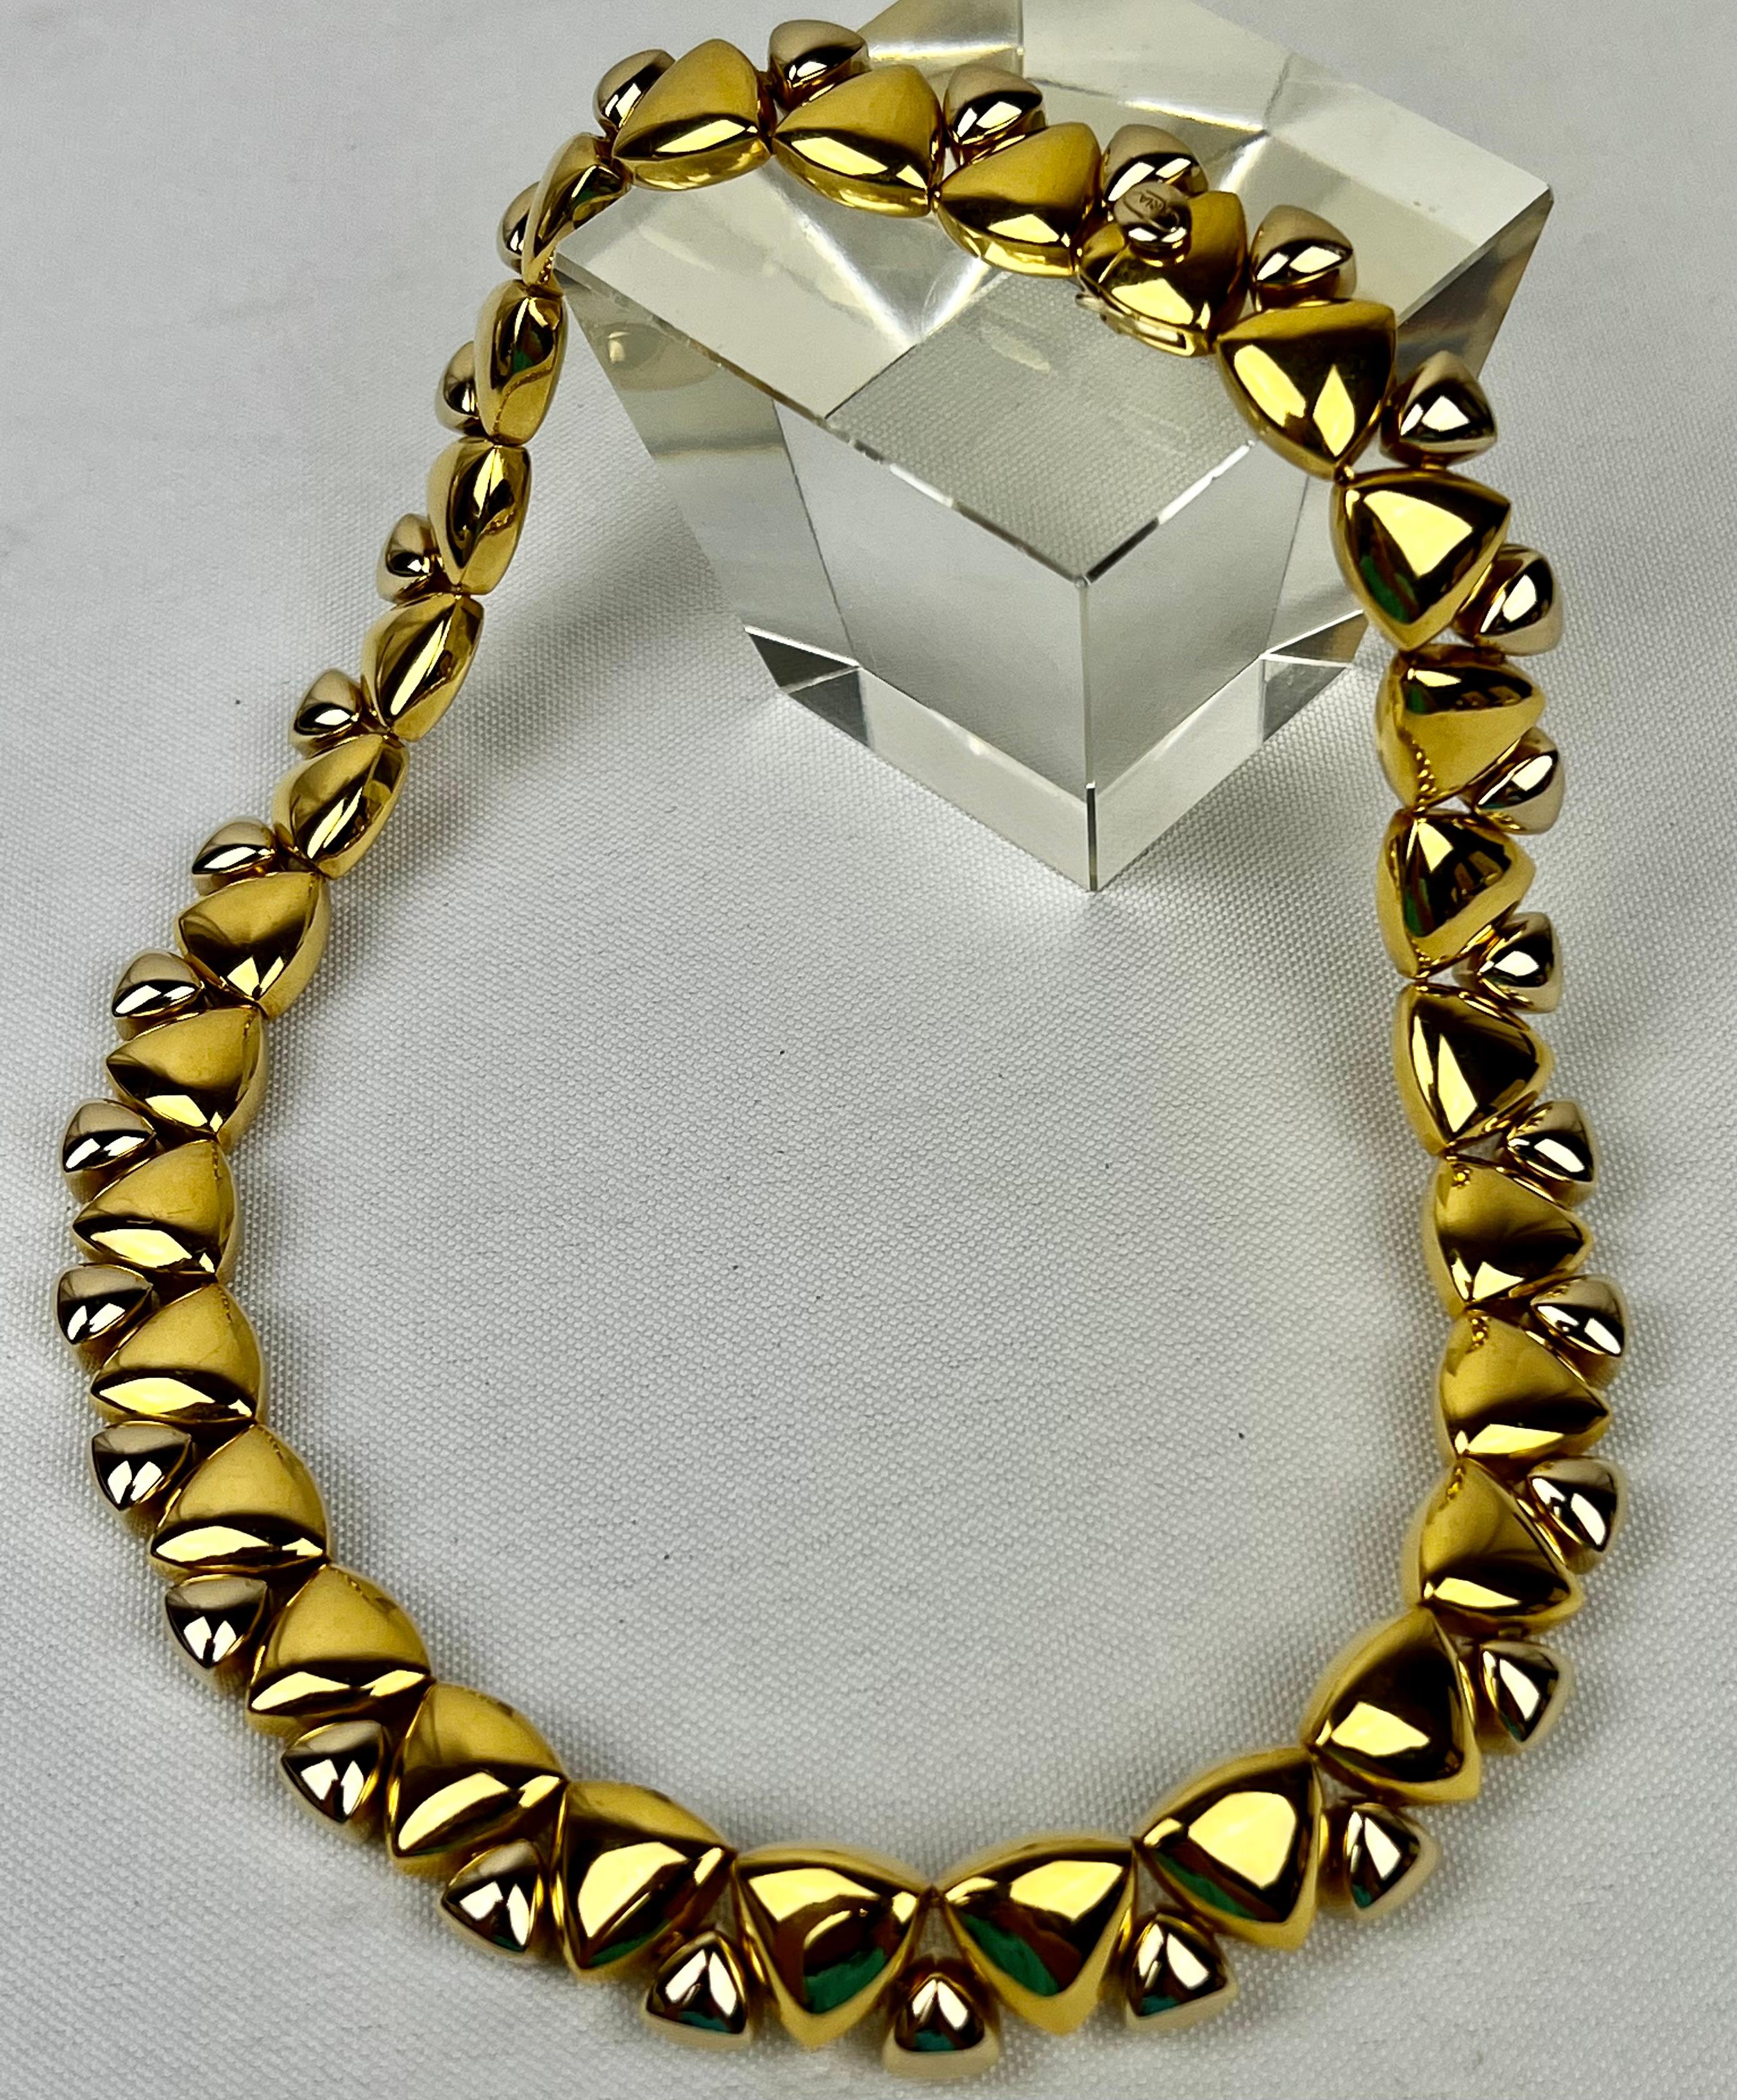 Die Halskette aus zweifarbigem Gold mit achtzehn Karat ist von KRIA.   Die Halskette besteht aus 29 identischen Gliedern mit einem Innendurchmesser von 5